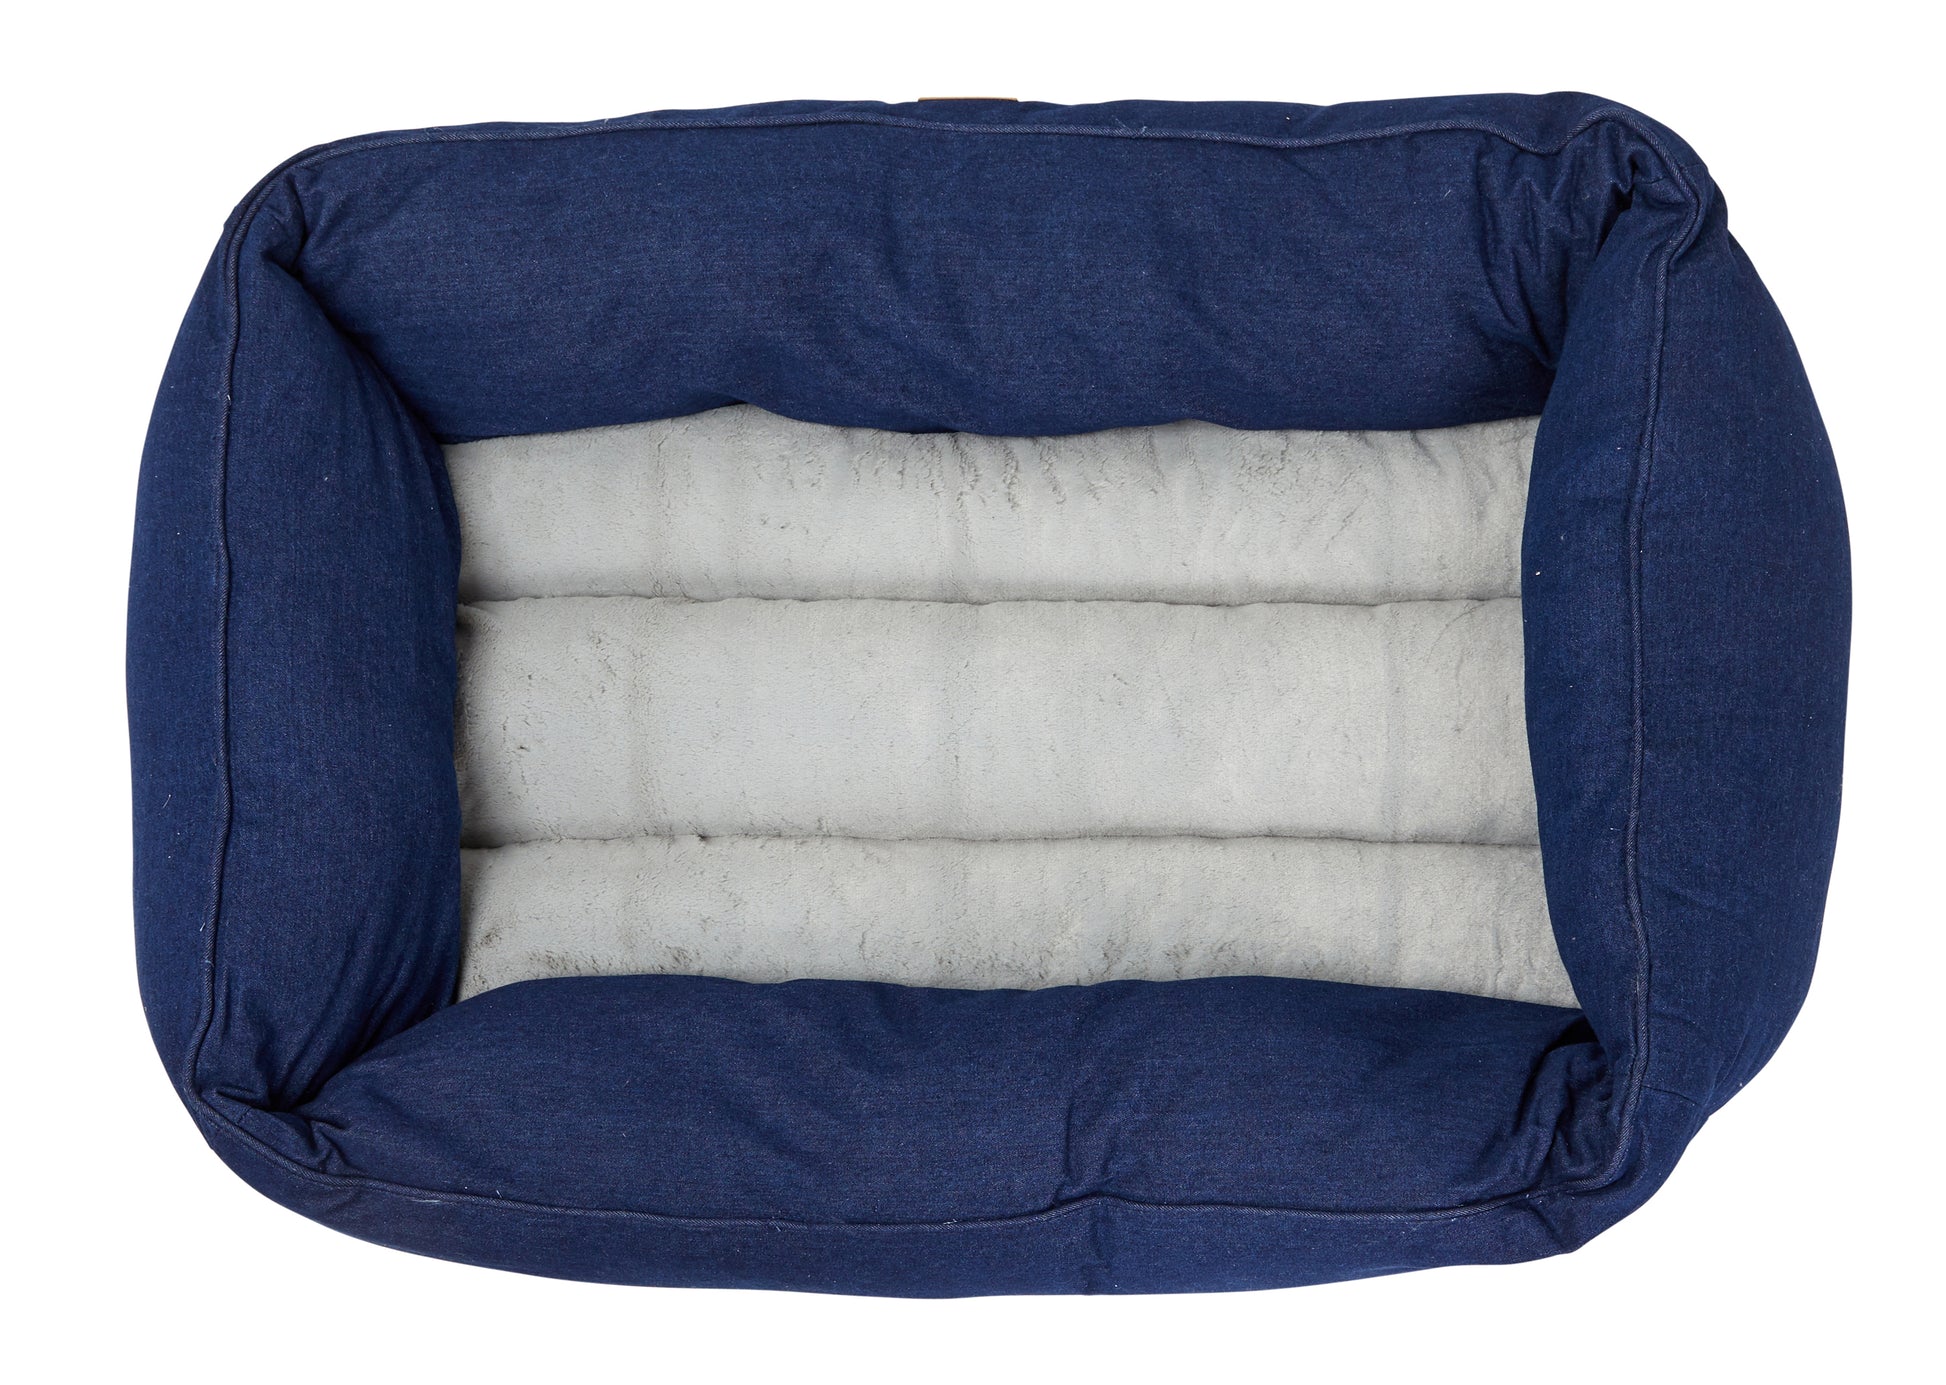 Mog & Bone Pet Products Bolster Dog Bed - Blue Denim